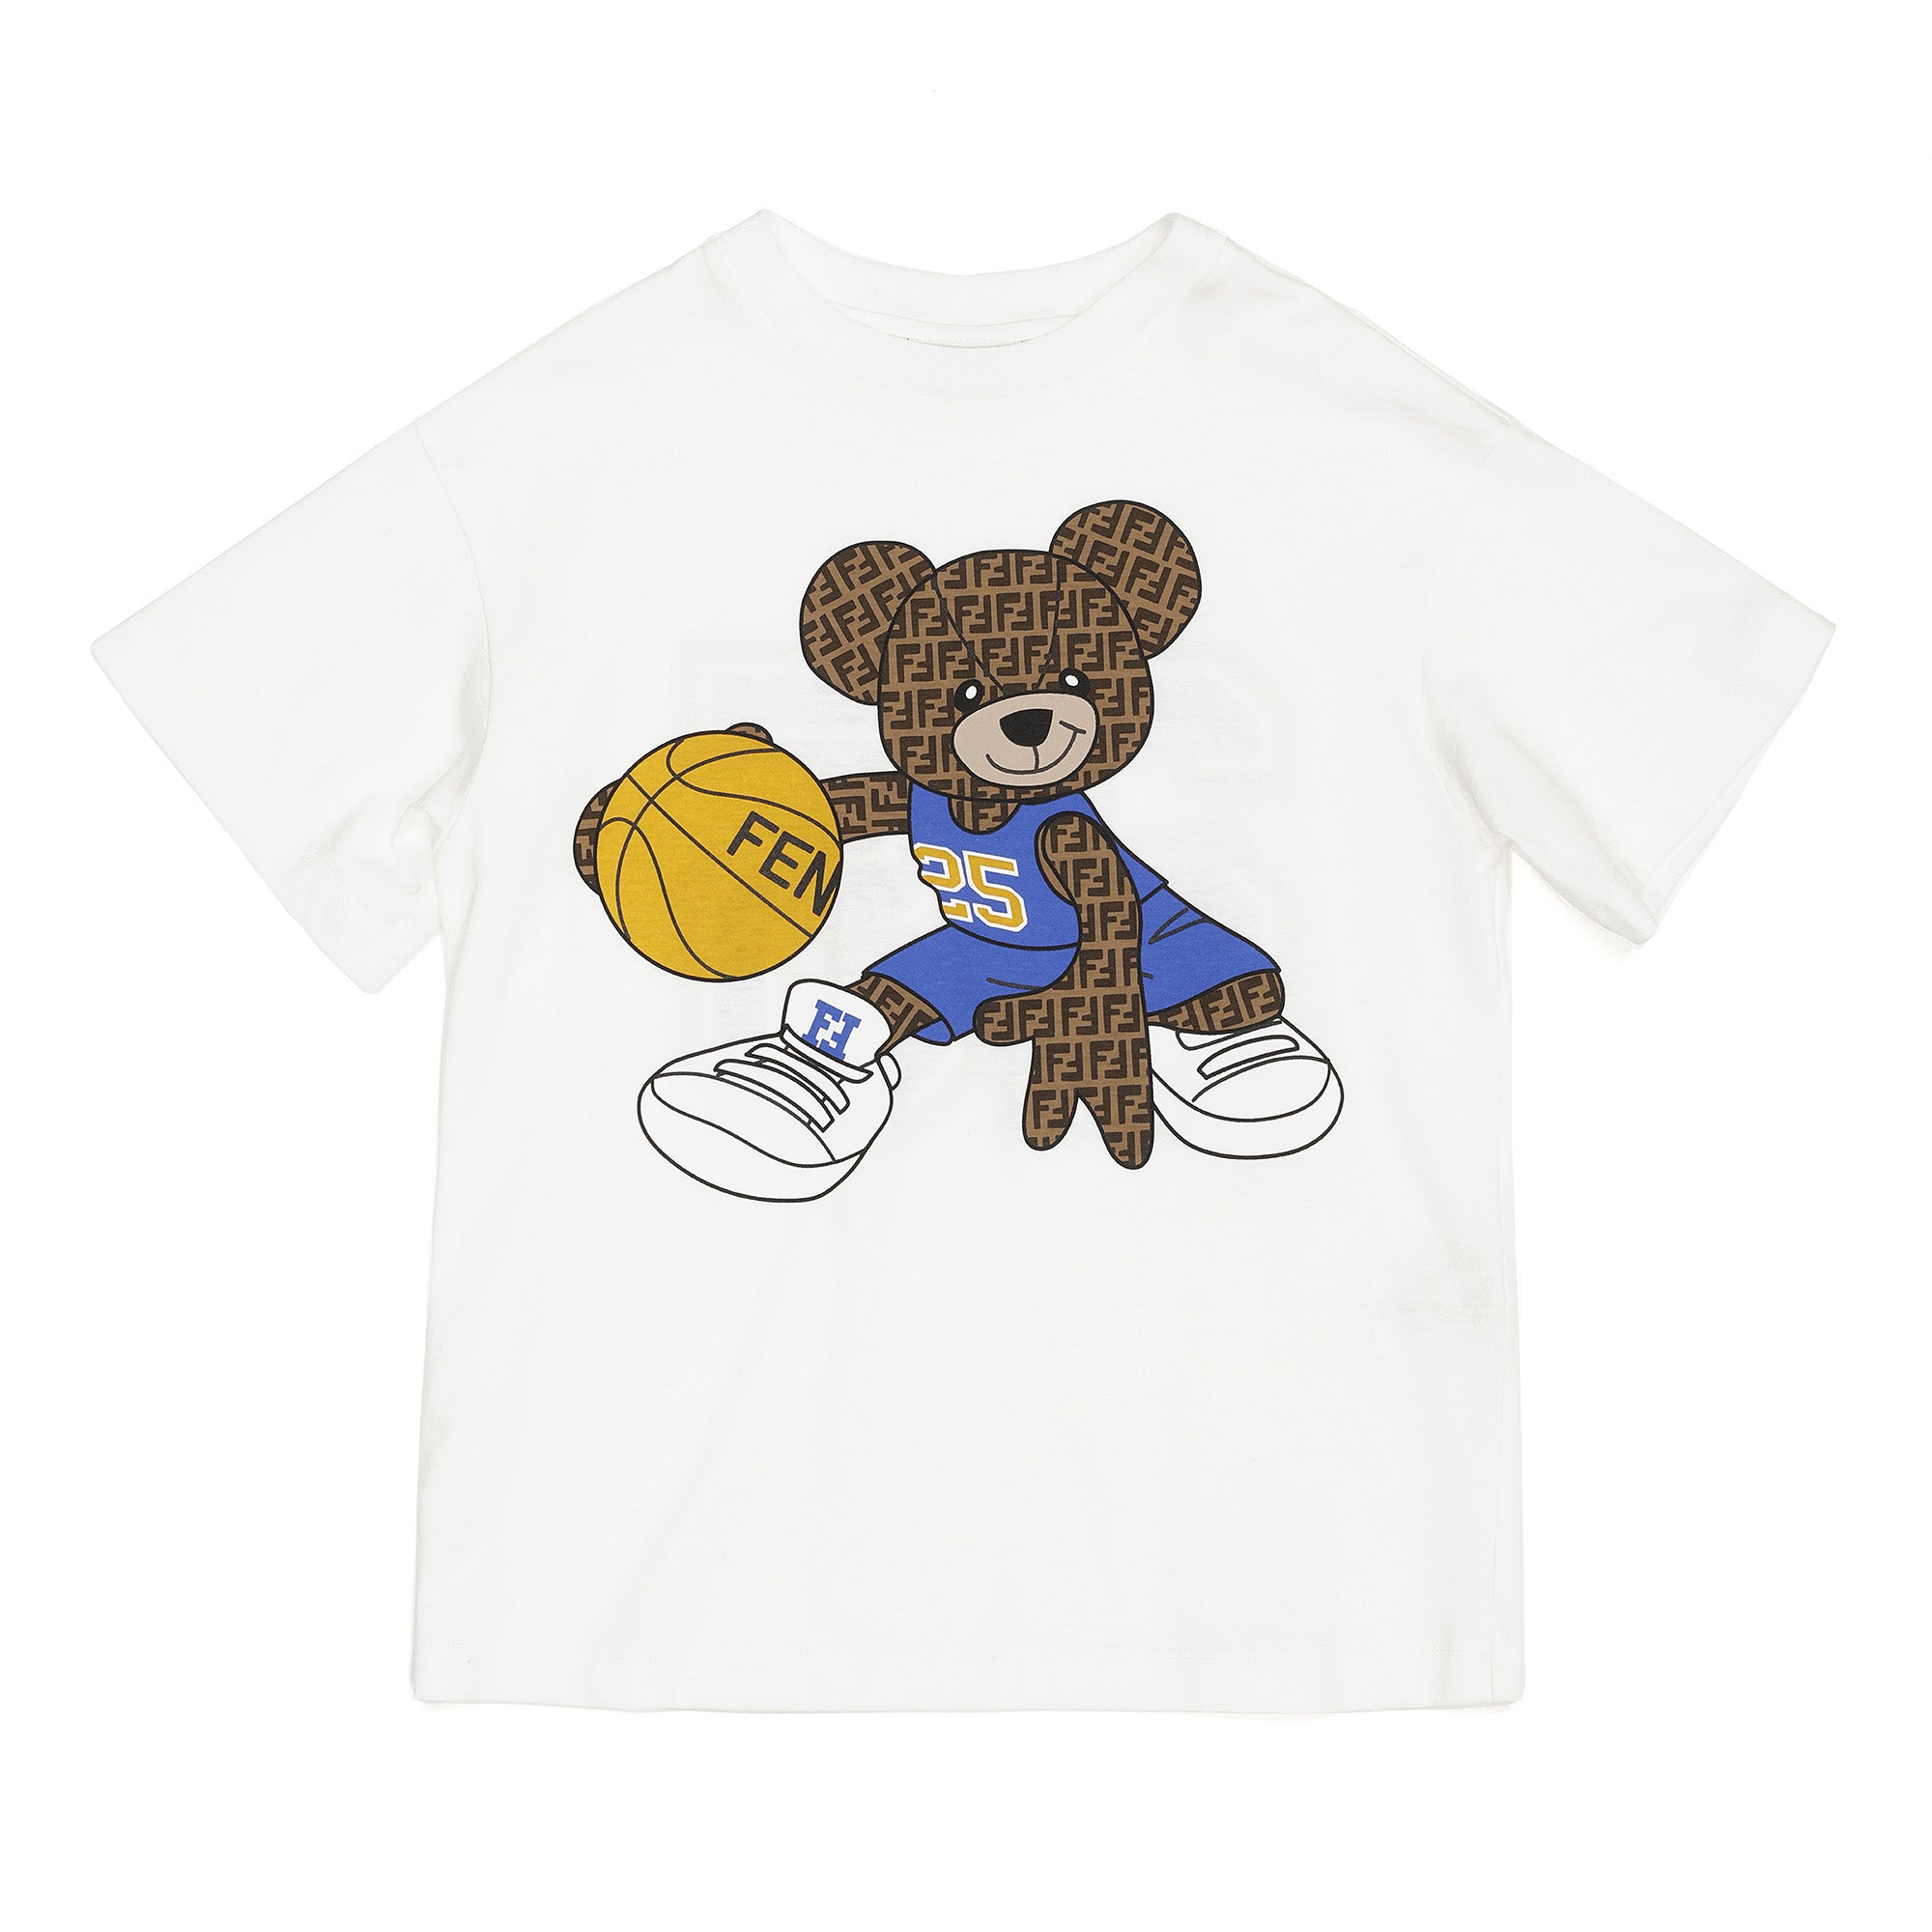 Fendi Basketball T-Shirt